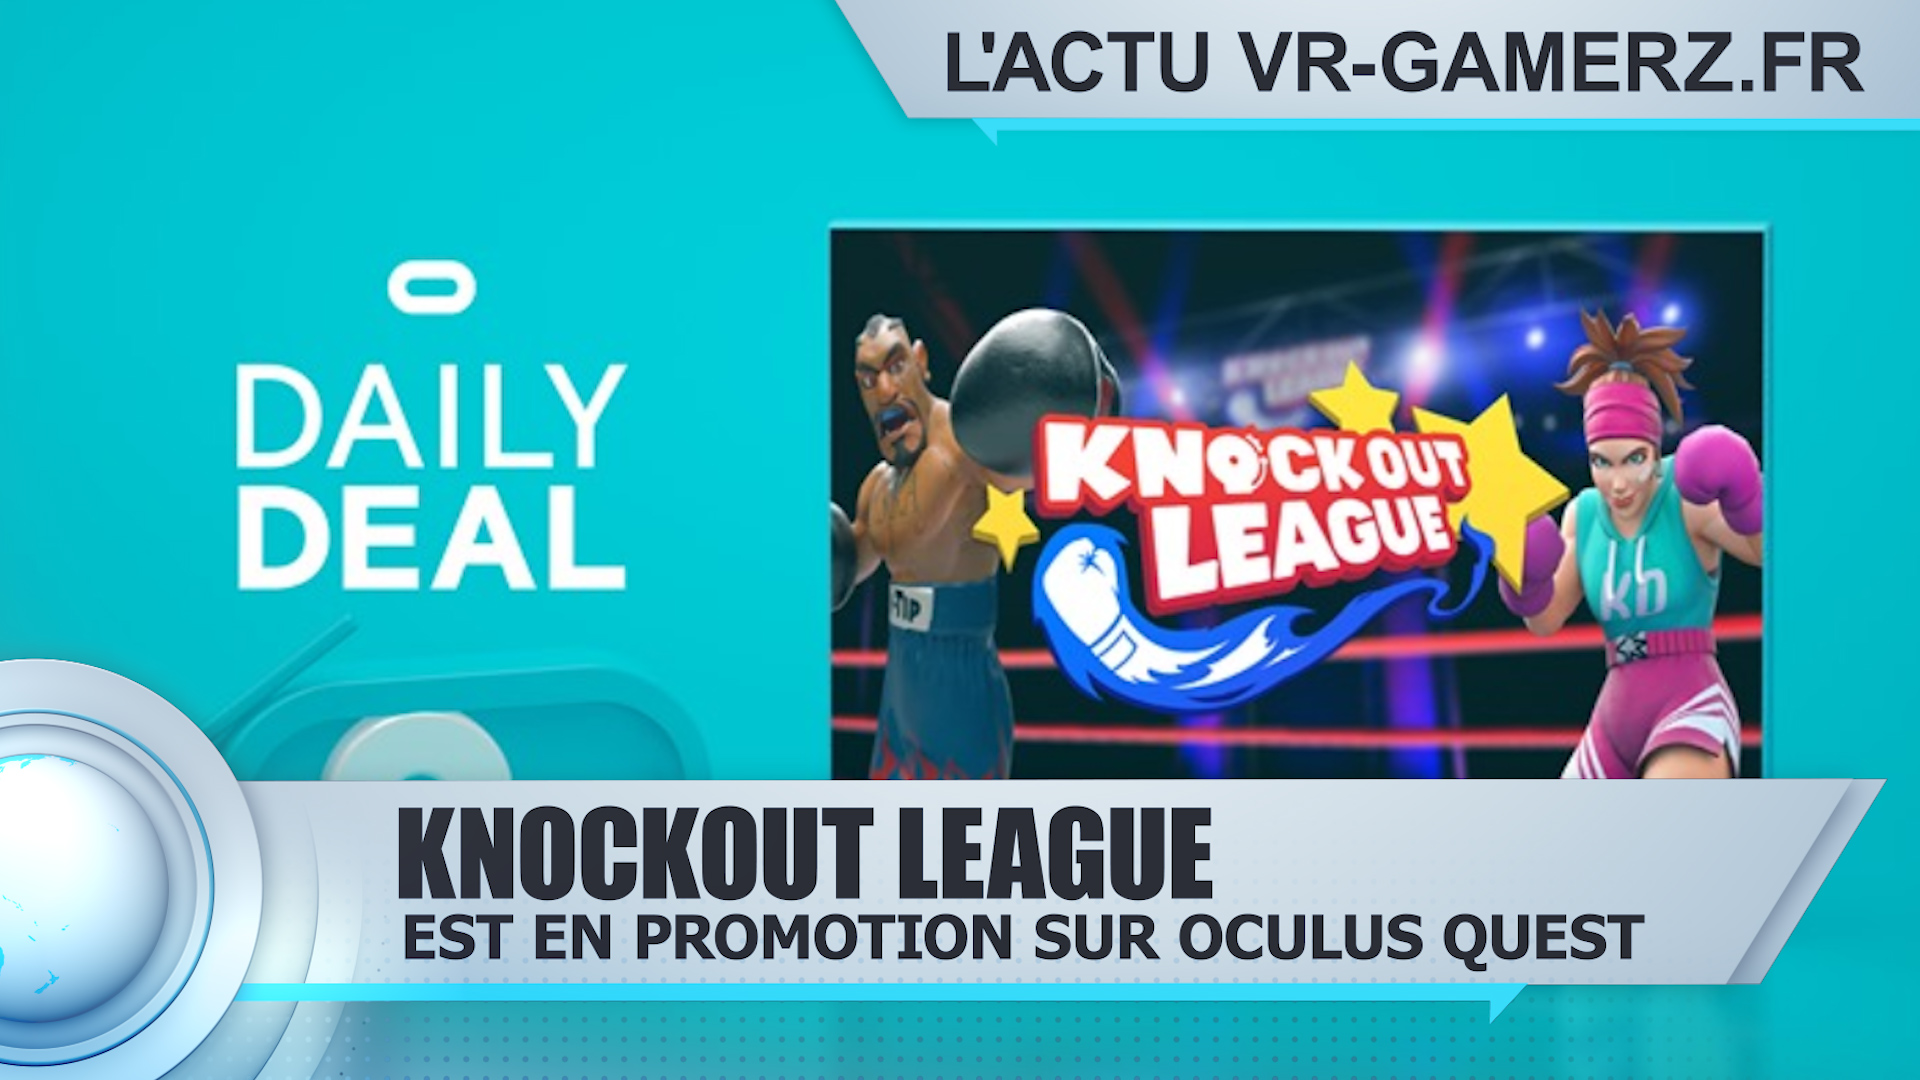 Knockout league est en promotion sur Oculus quest